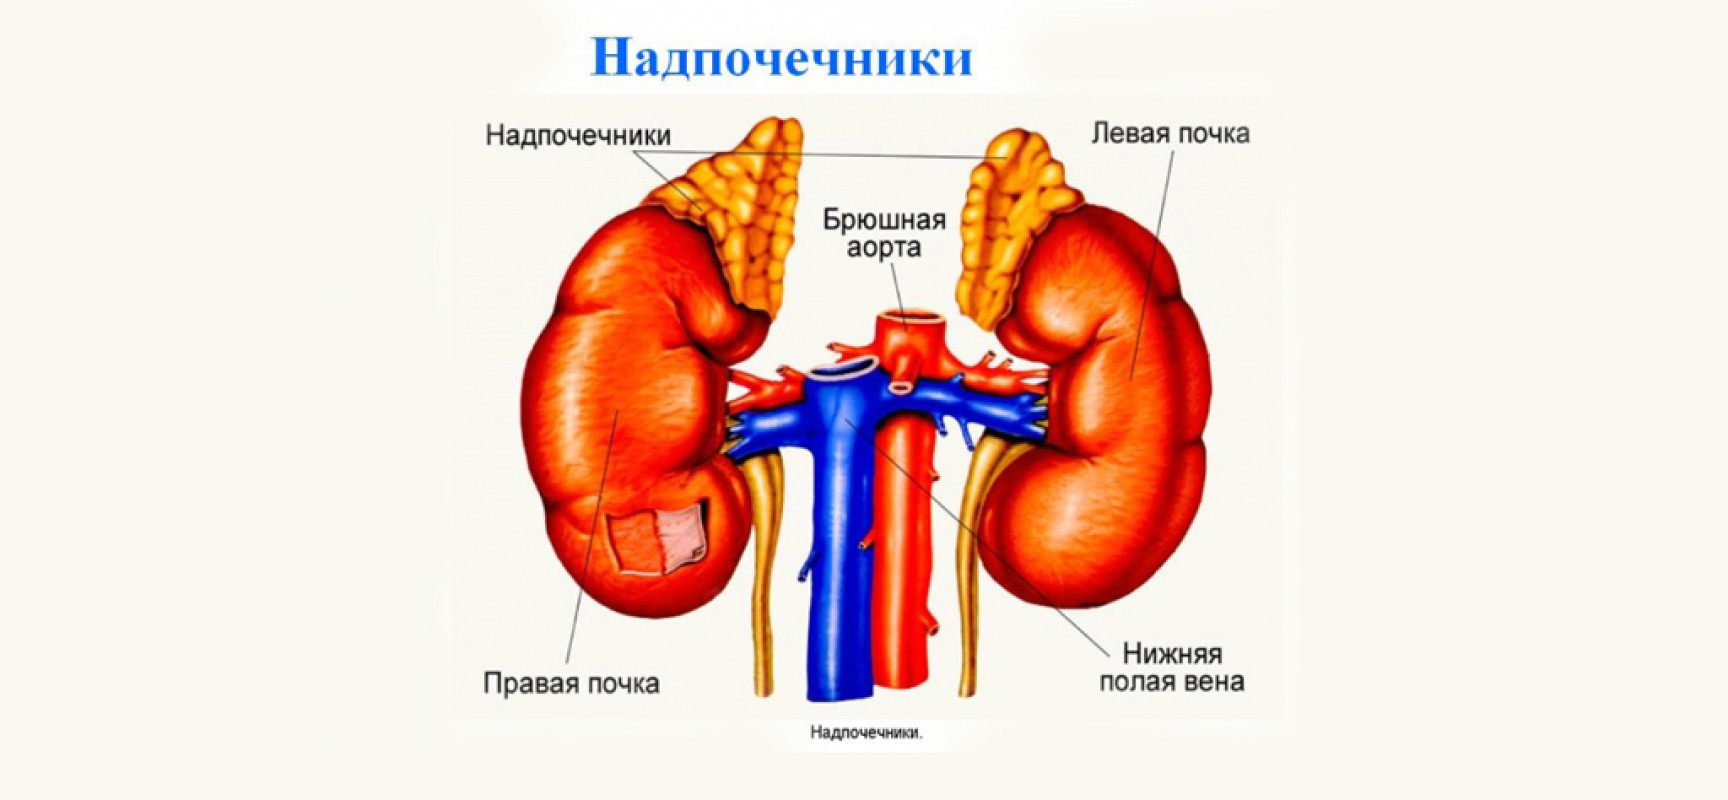 Расположение органов у человека надпочечники